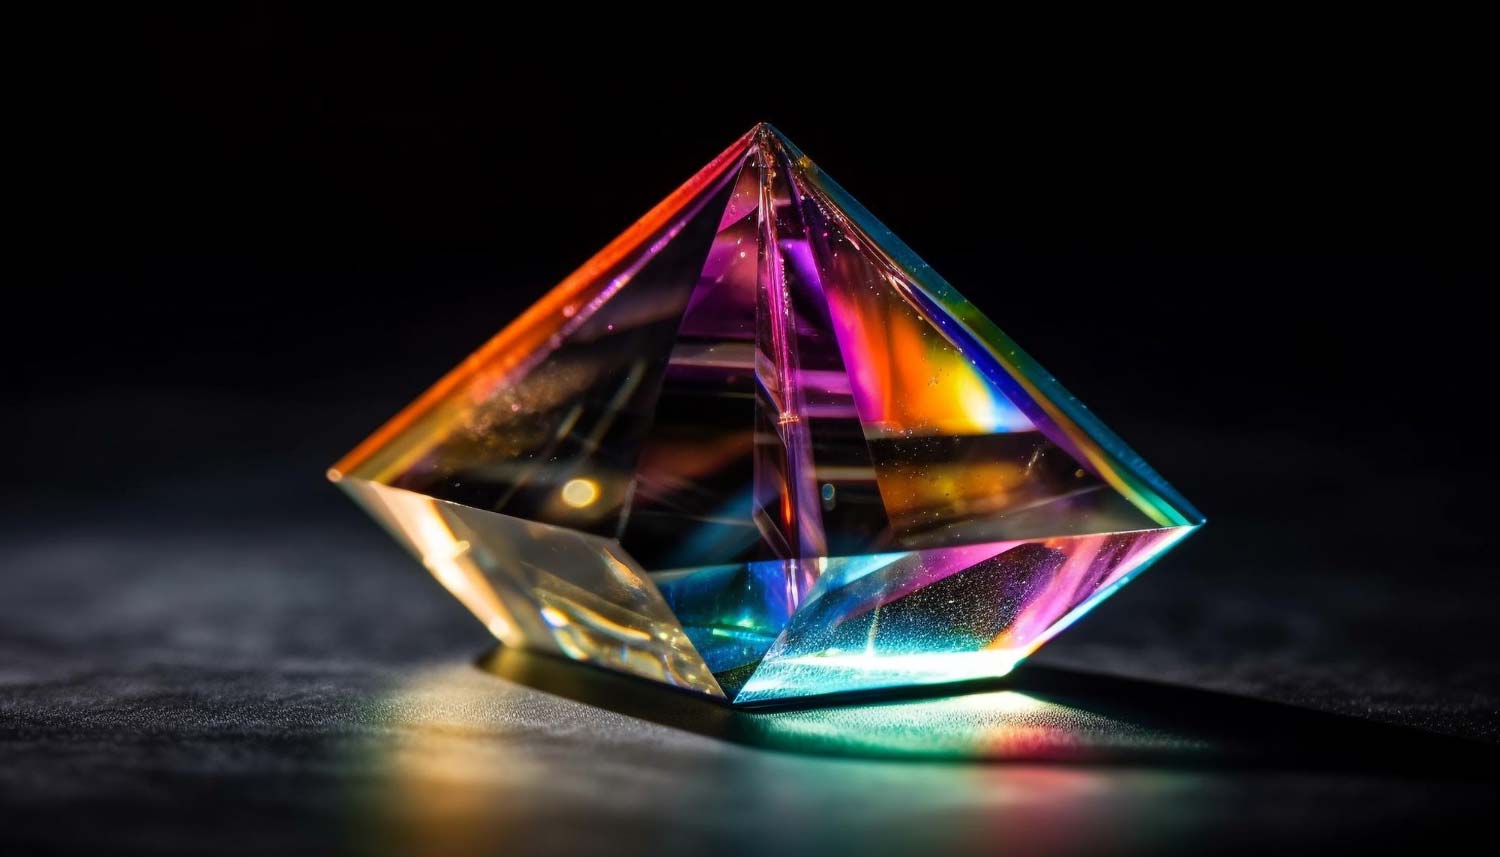 Shiny gemstone reflects multi ed crystalline elegance